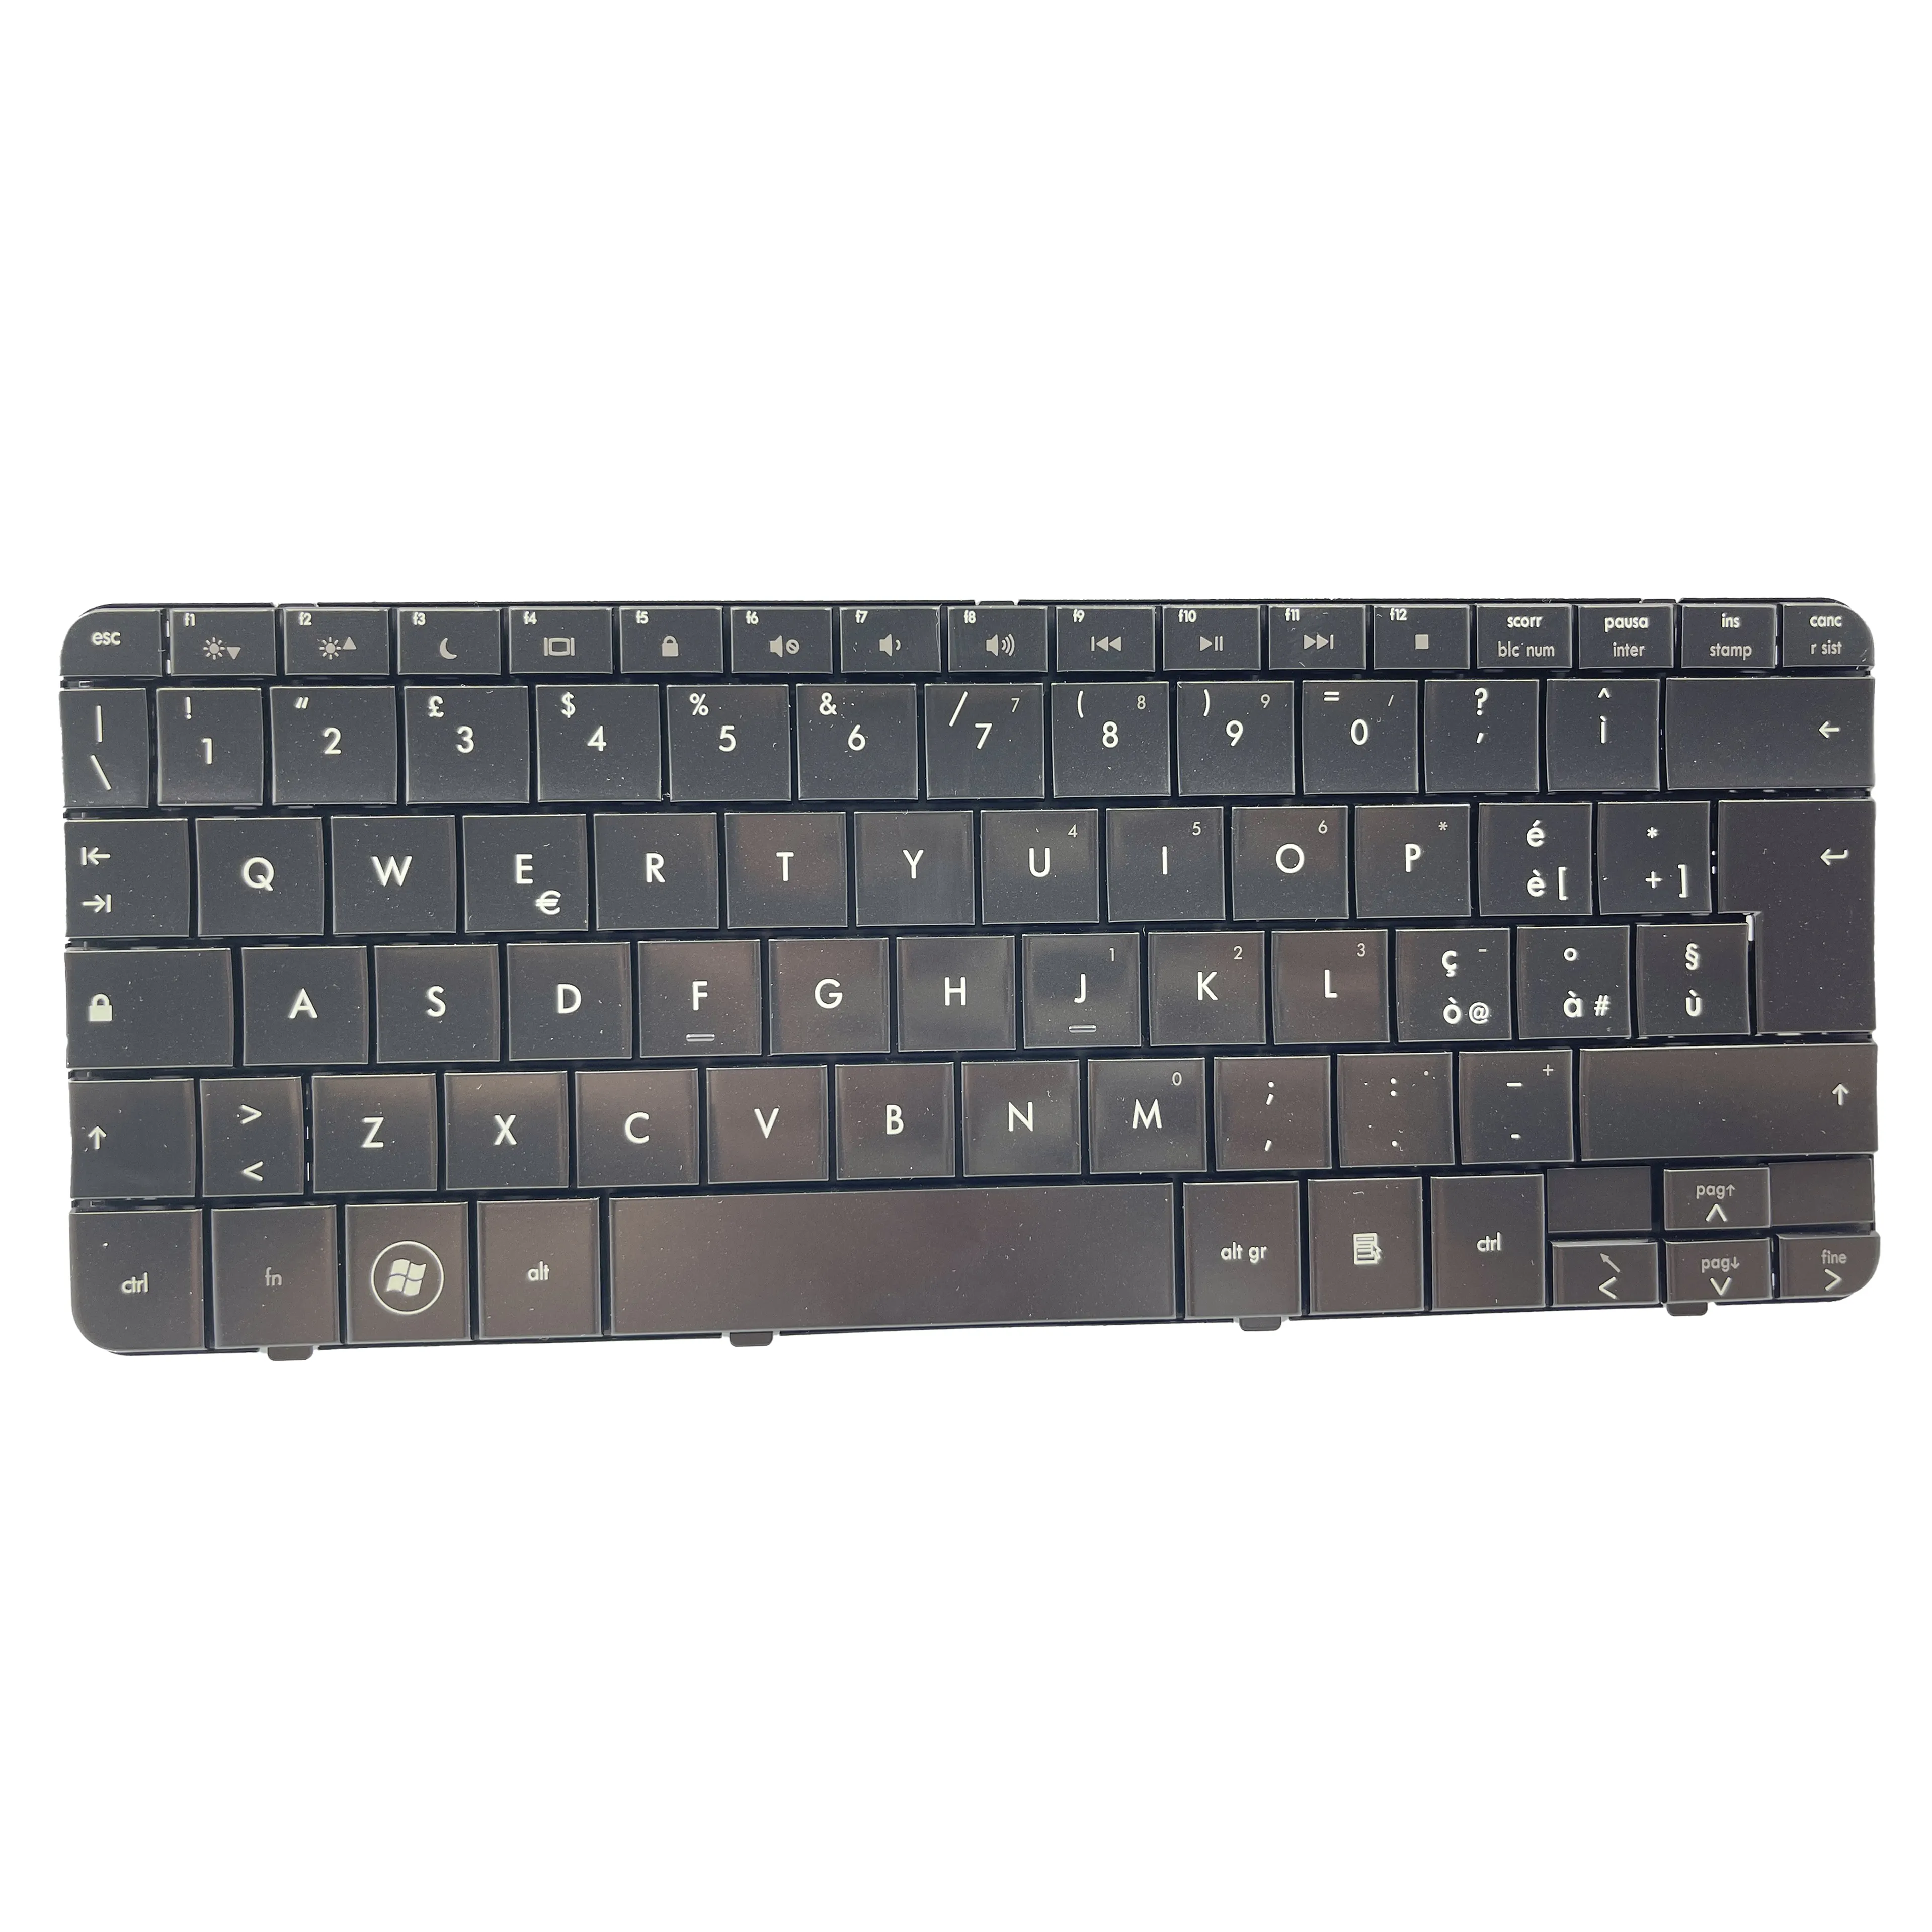 แป้นพิมพ์ภาษาอิตาลีสำหรับแล็ปท็อปใหม่สำหรับ HP Pavilion DV2 DV2-1000รูปแบบแป้นพิมพ์สีดำ